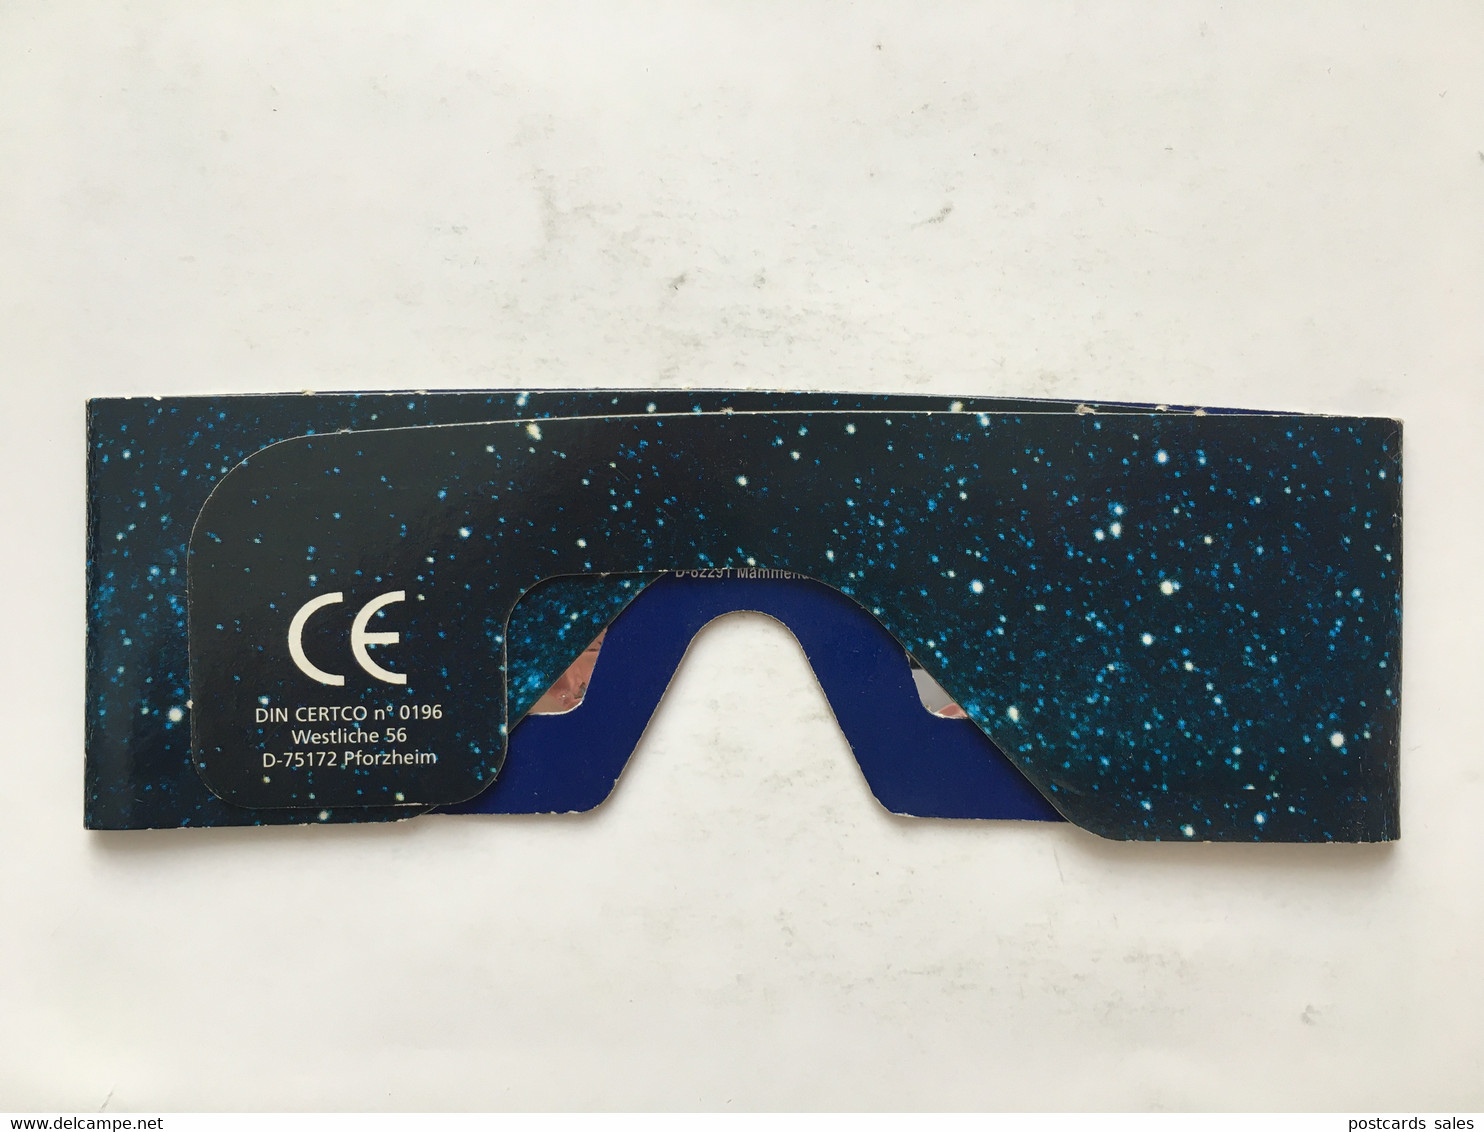 Zeiss Eclipse Glasses / Lunettes D'éclipse / Eclipse-Brille - Societe Astronomique De France - Pforzheim Mammendorf - Medical & Dental Equipment